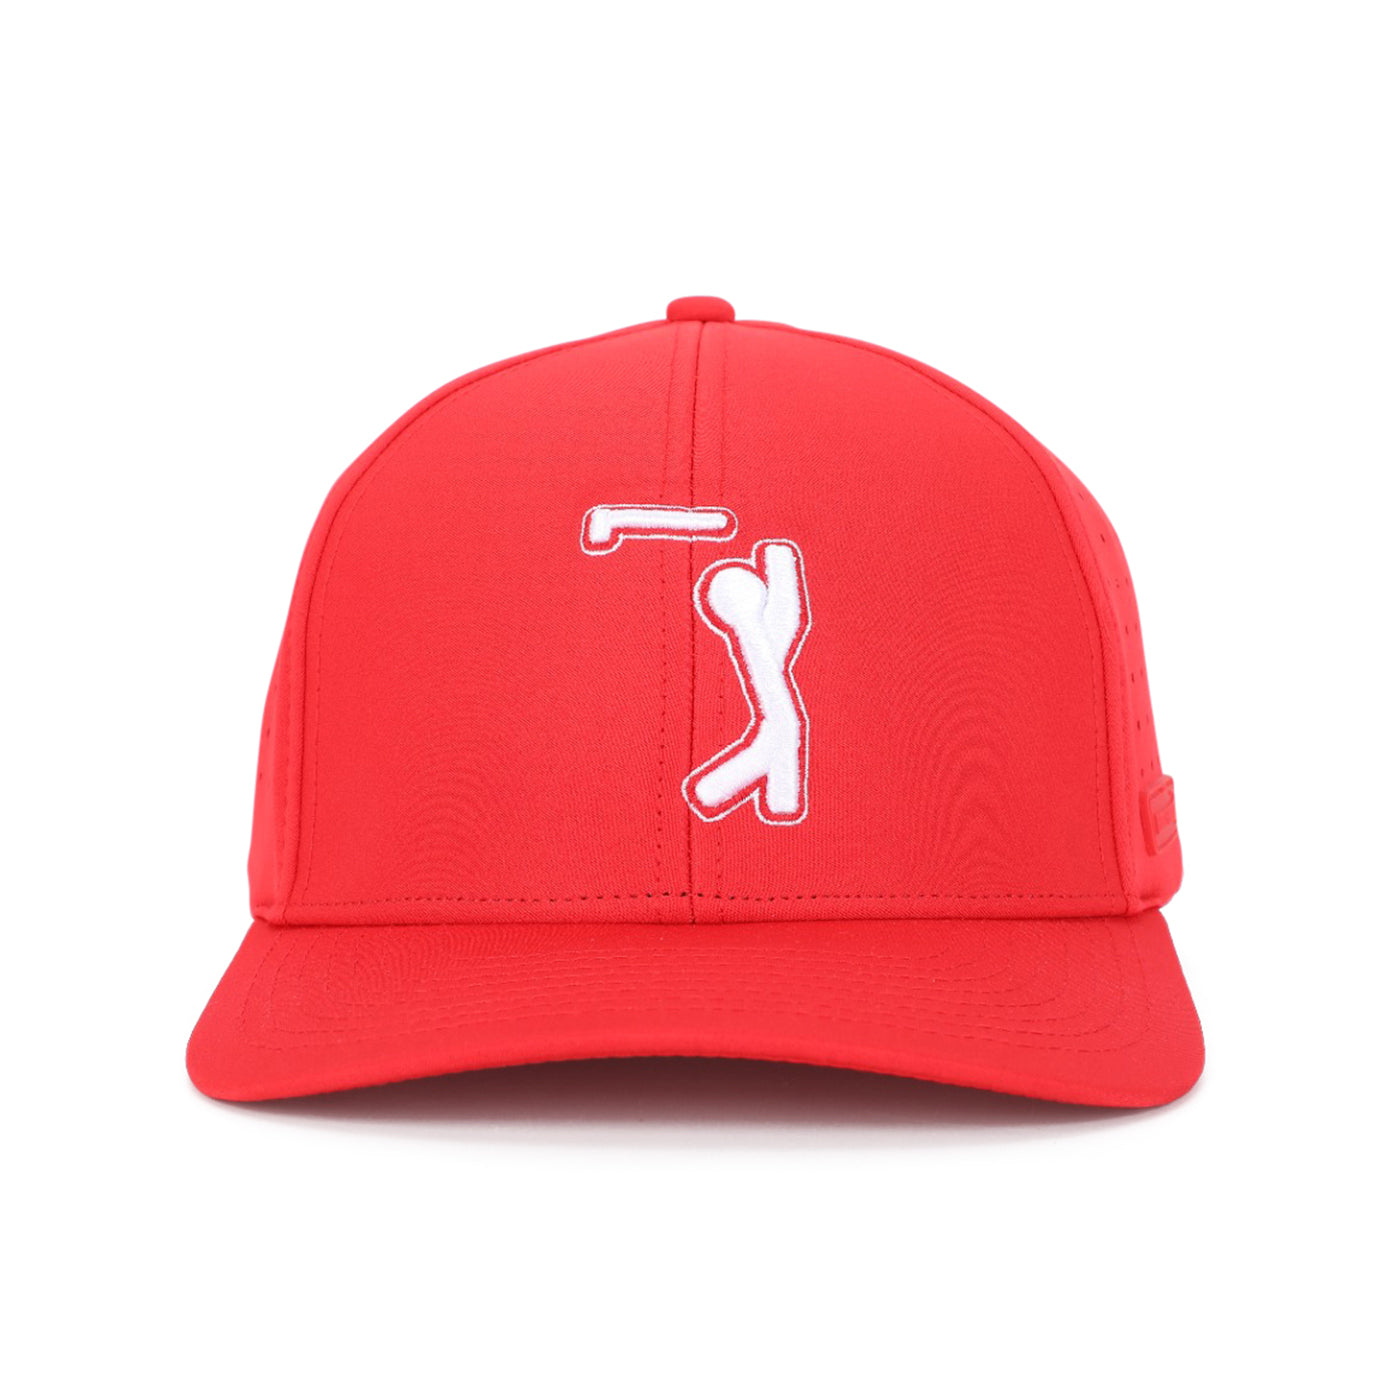 Bogeyman Red - Performance Golf Hat - Stretch Fit